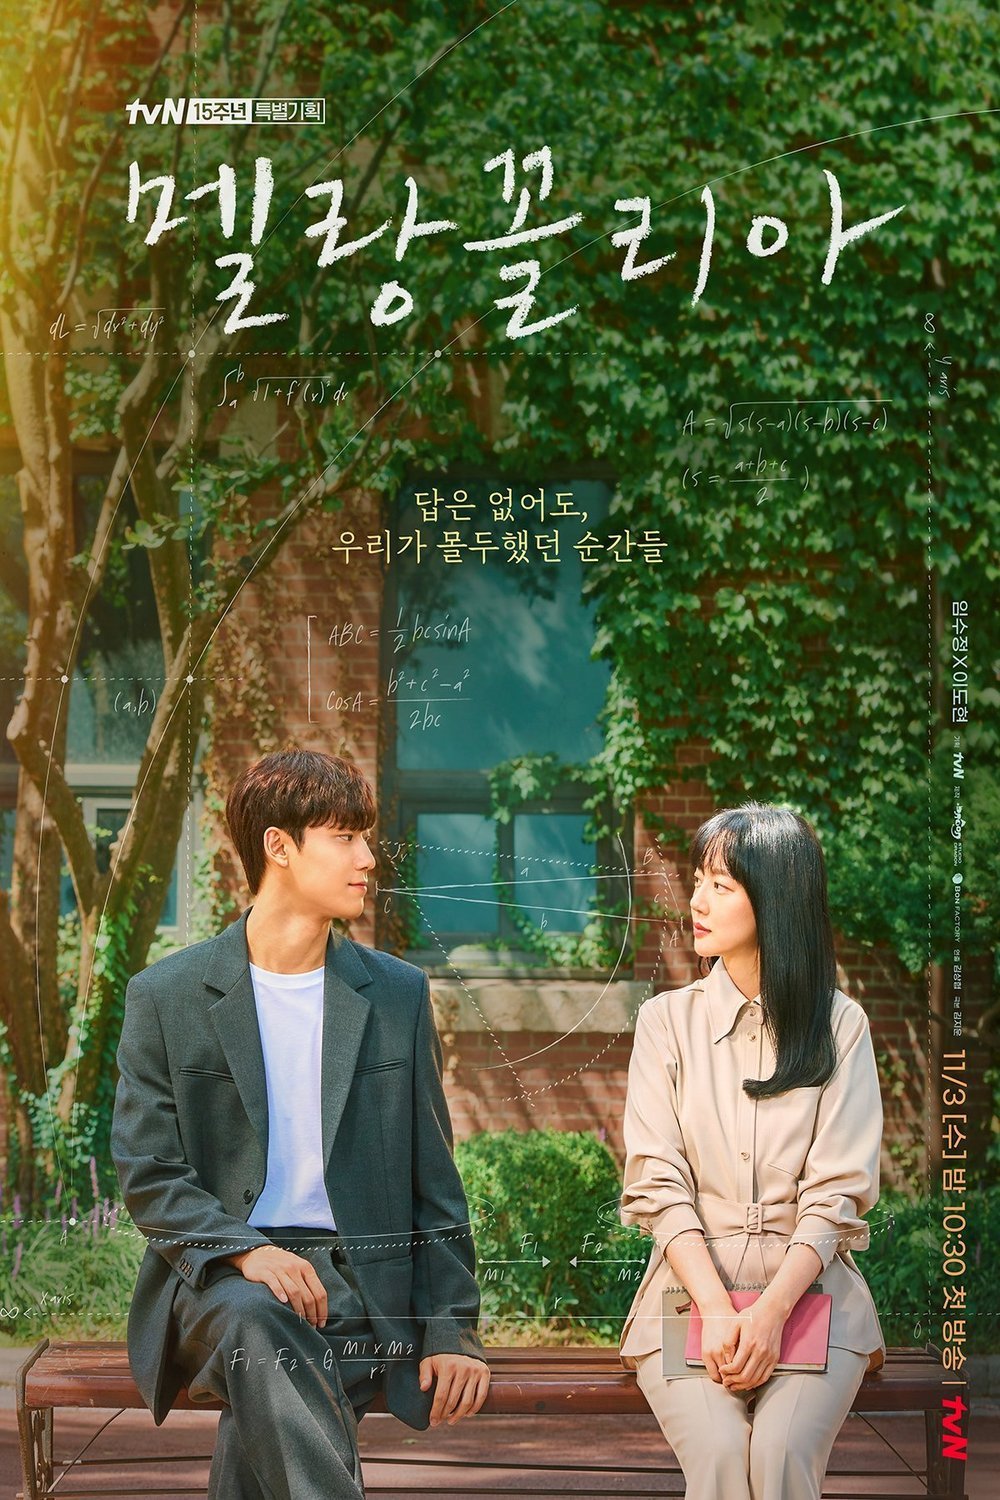 Korean poster of the movie Melancholia